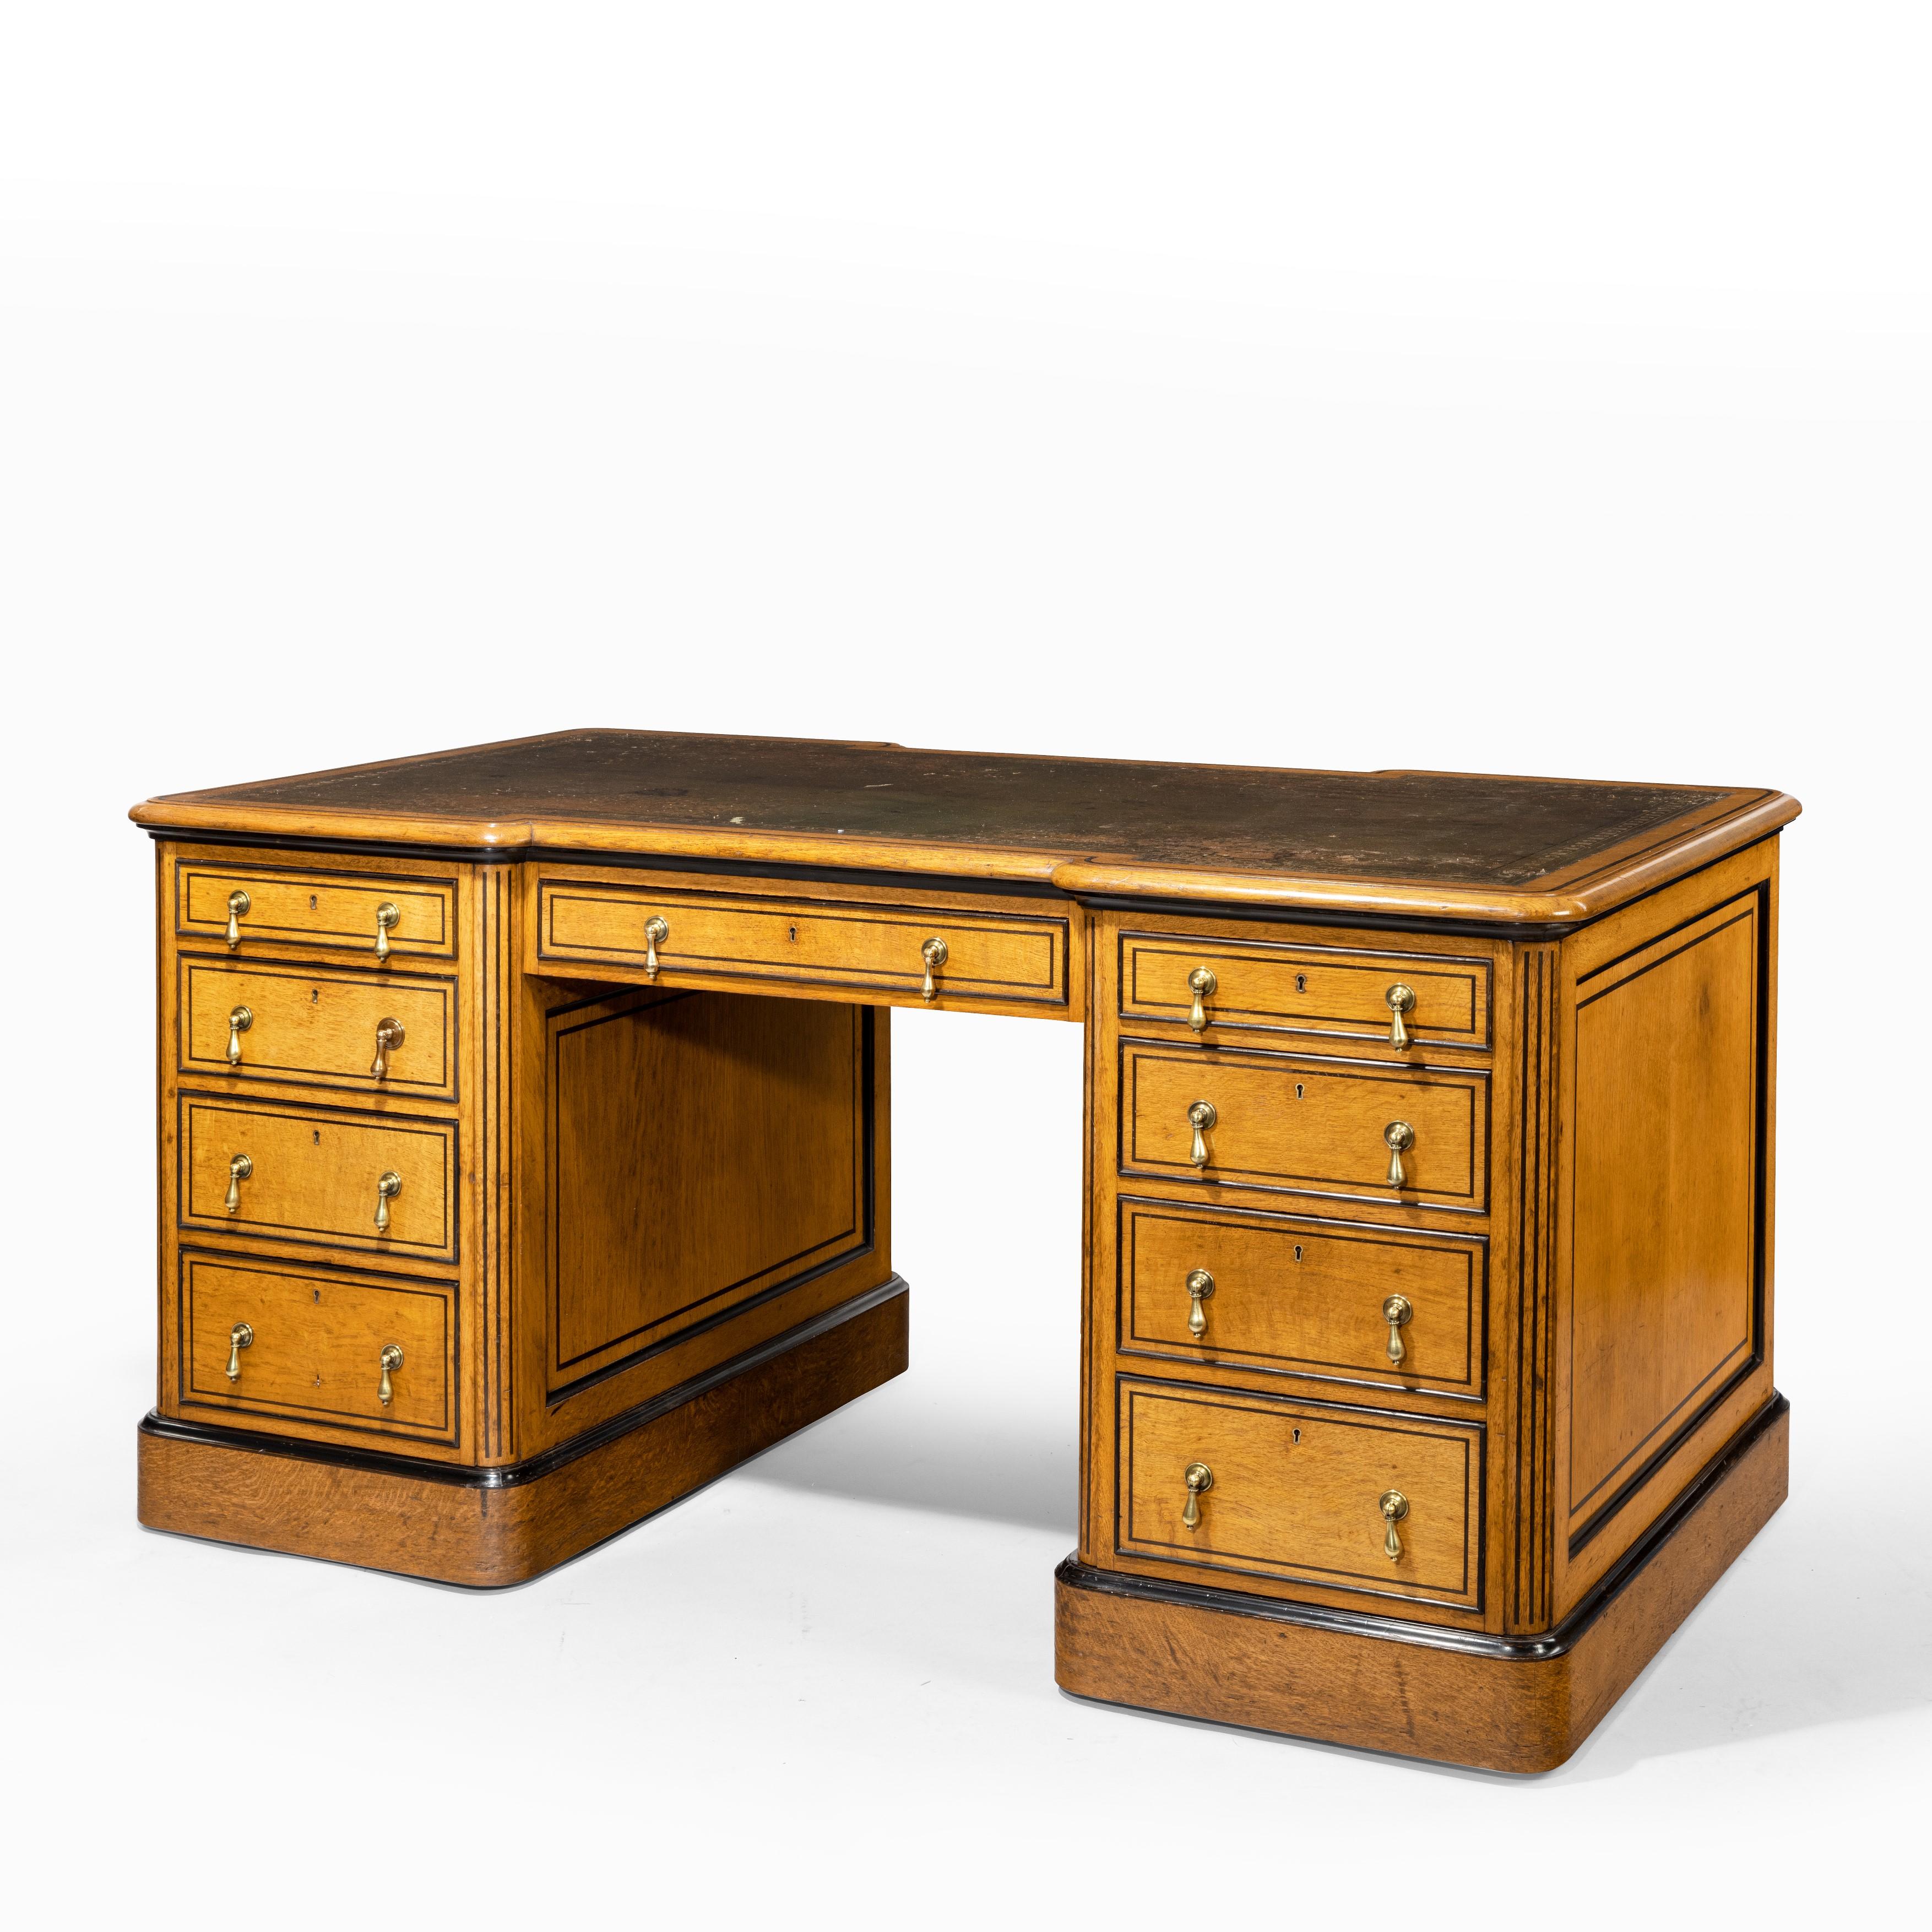 Ein kleiner viktorianischer Schreibtisch aus Eiche und Ebenholz, der Holland and Son zugeschrieben wird. Die rechteckige, lederbezogene Platte befindet sich über einem Knieloch mit einer zentralen Schublade, die auf der einen Seite von vier mit